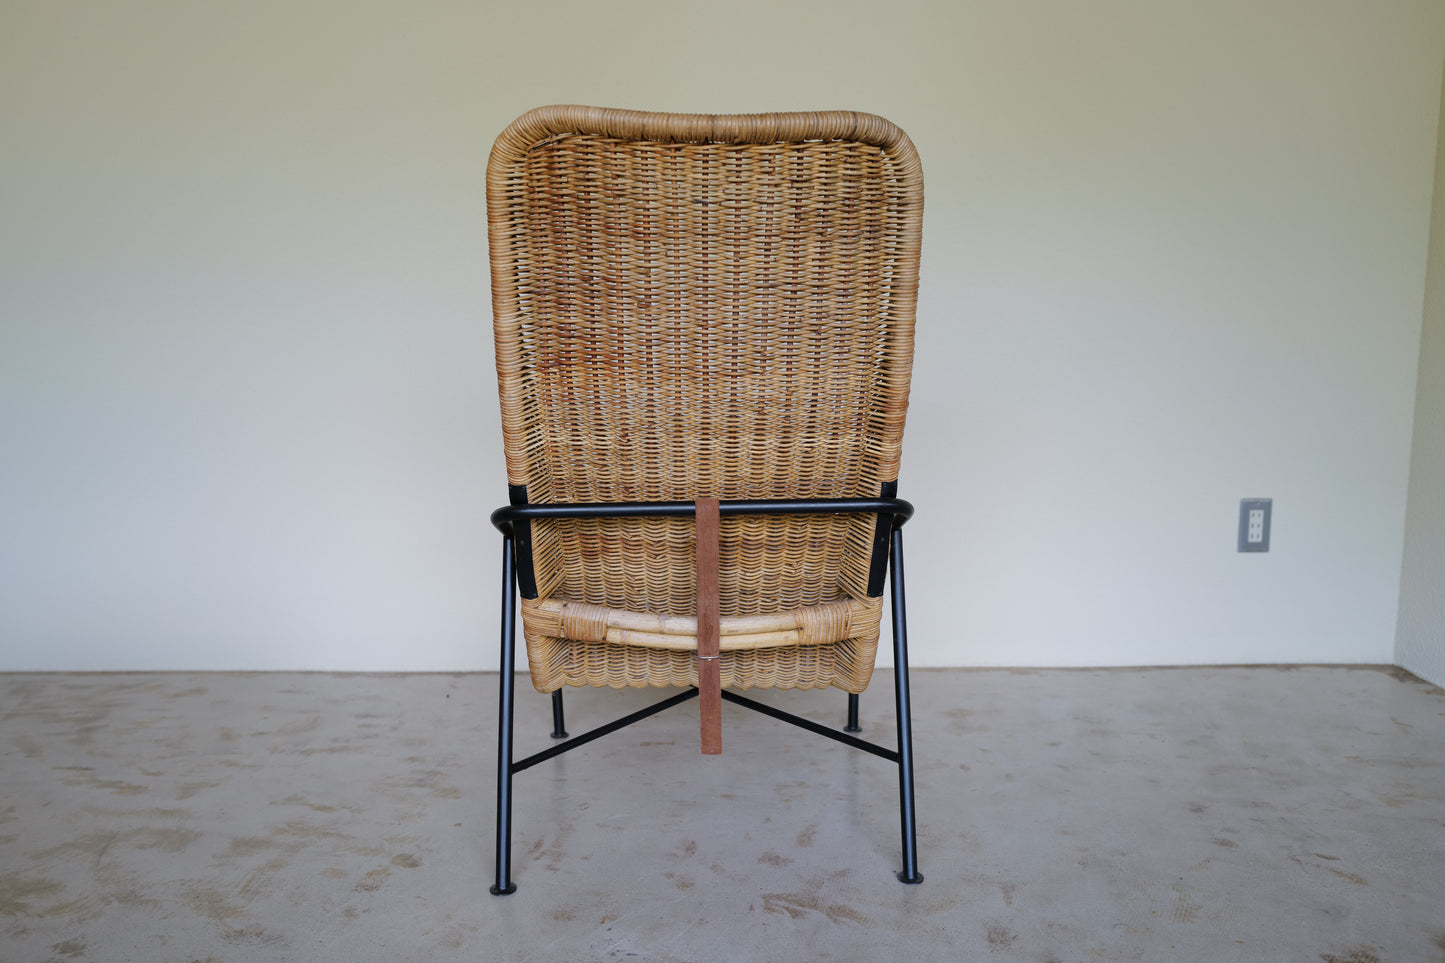 Model 514a rattan easy chair by Dirk van Sliedregt